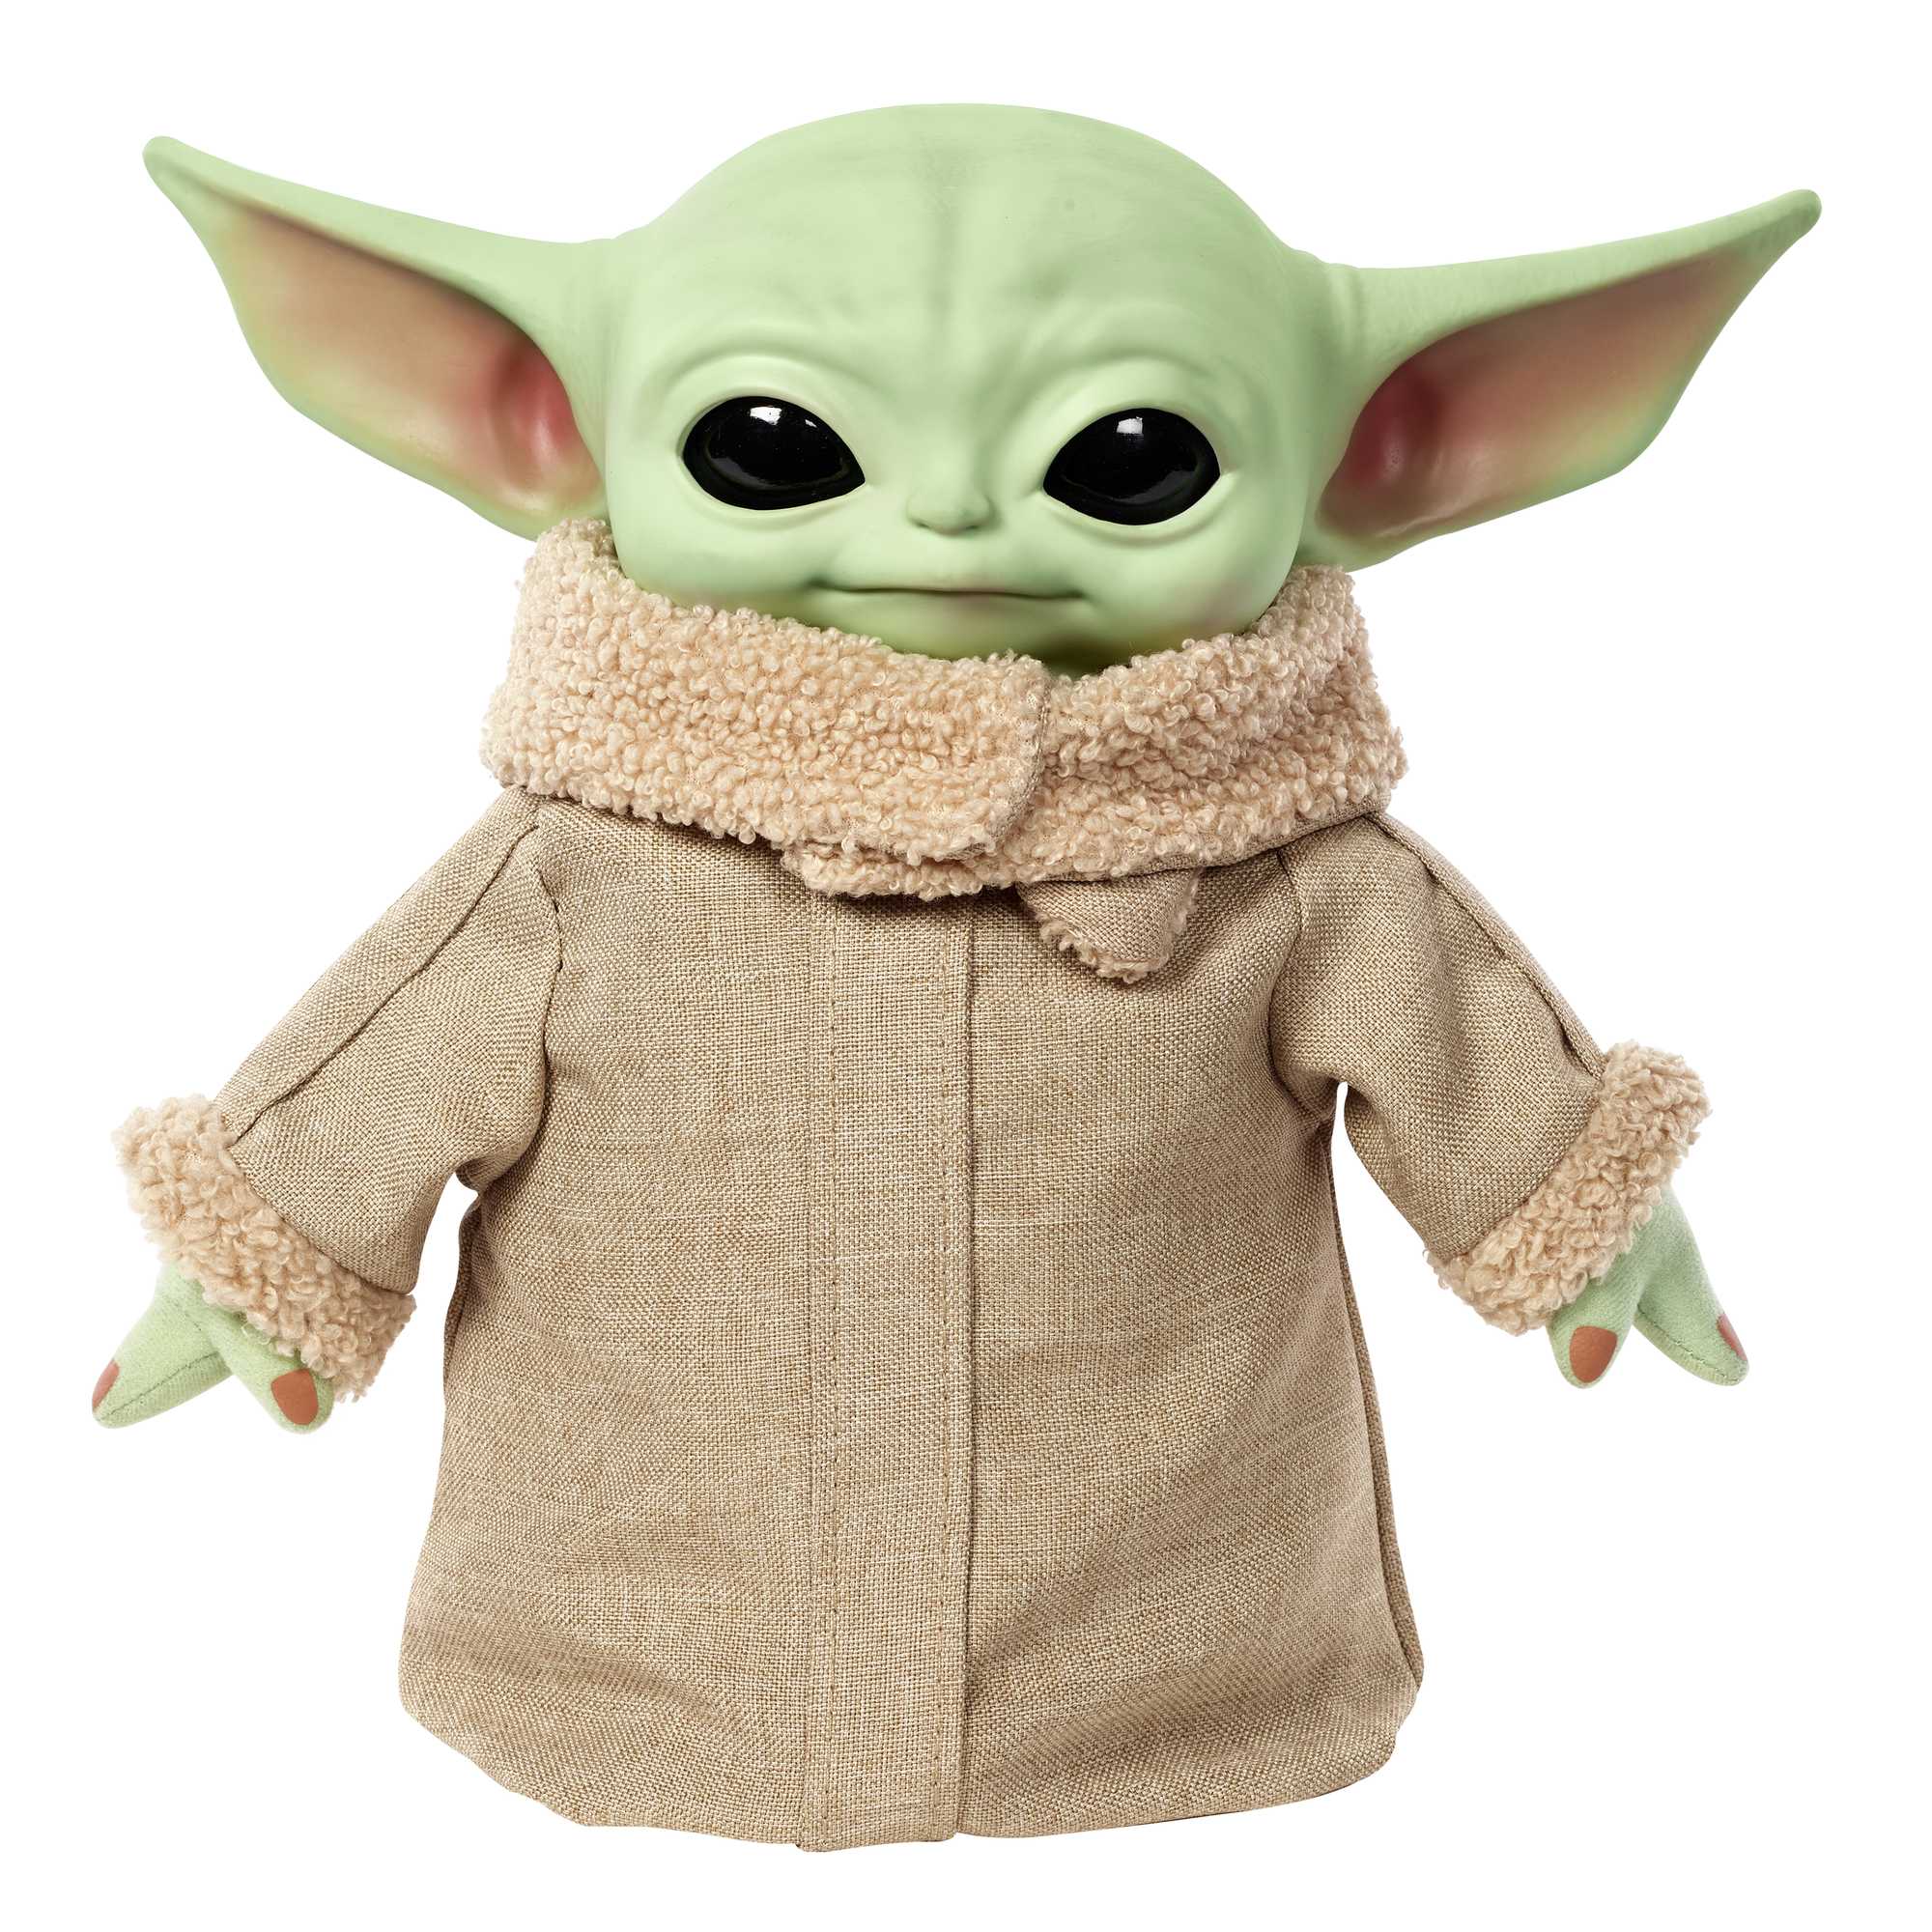 Mira el nuevo peluche de Baby Yoda adorable y abrazable para tiempos de  pánico